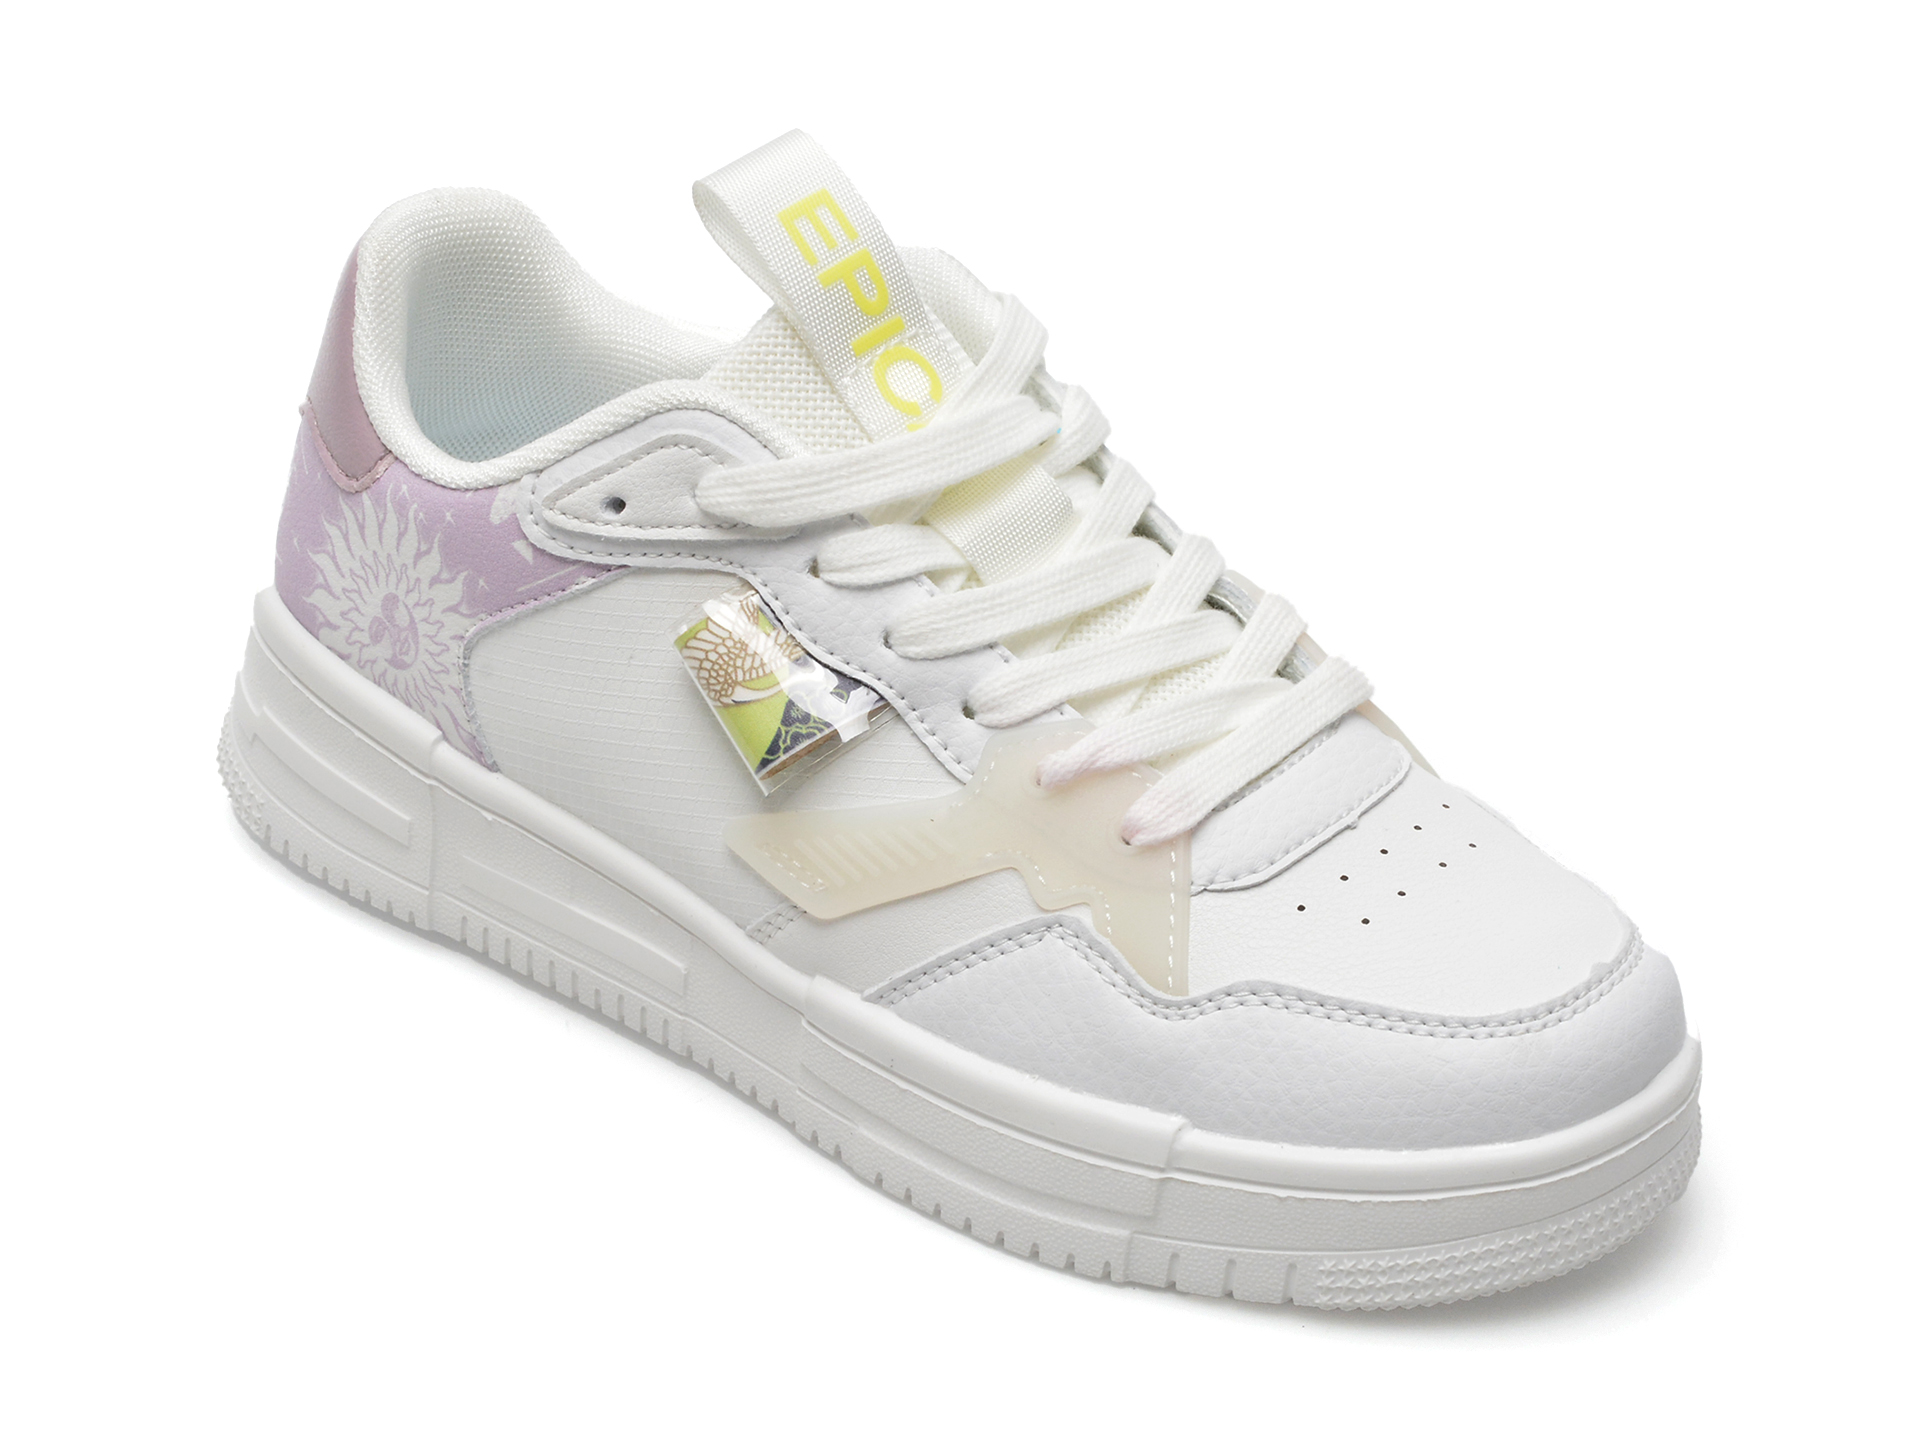 Pantofi EPICA albi, MJ2238, din piele ecologica Answear 2023-09-26